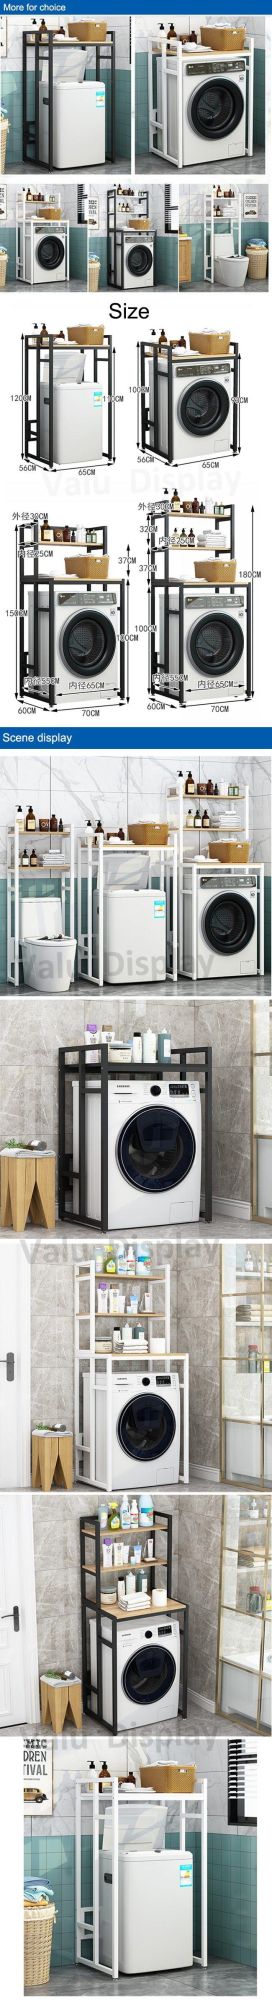 3-Tier Drum Washing Machine Storage Rack Space-Saving Bathroom Storage